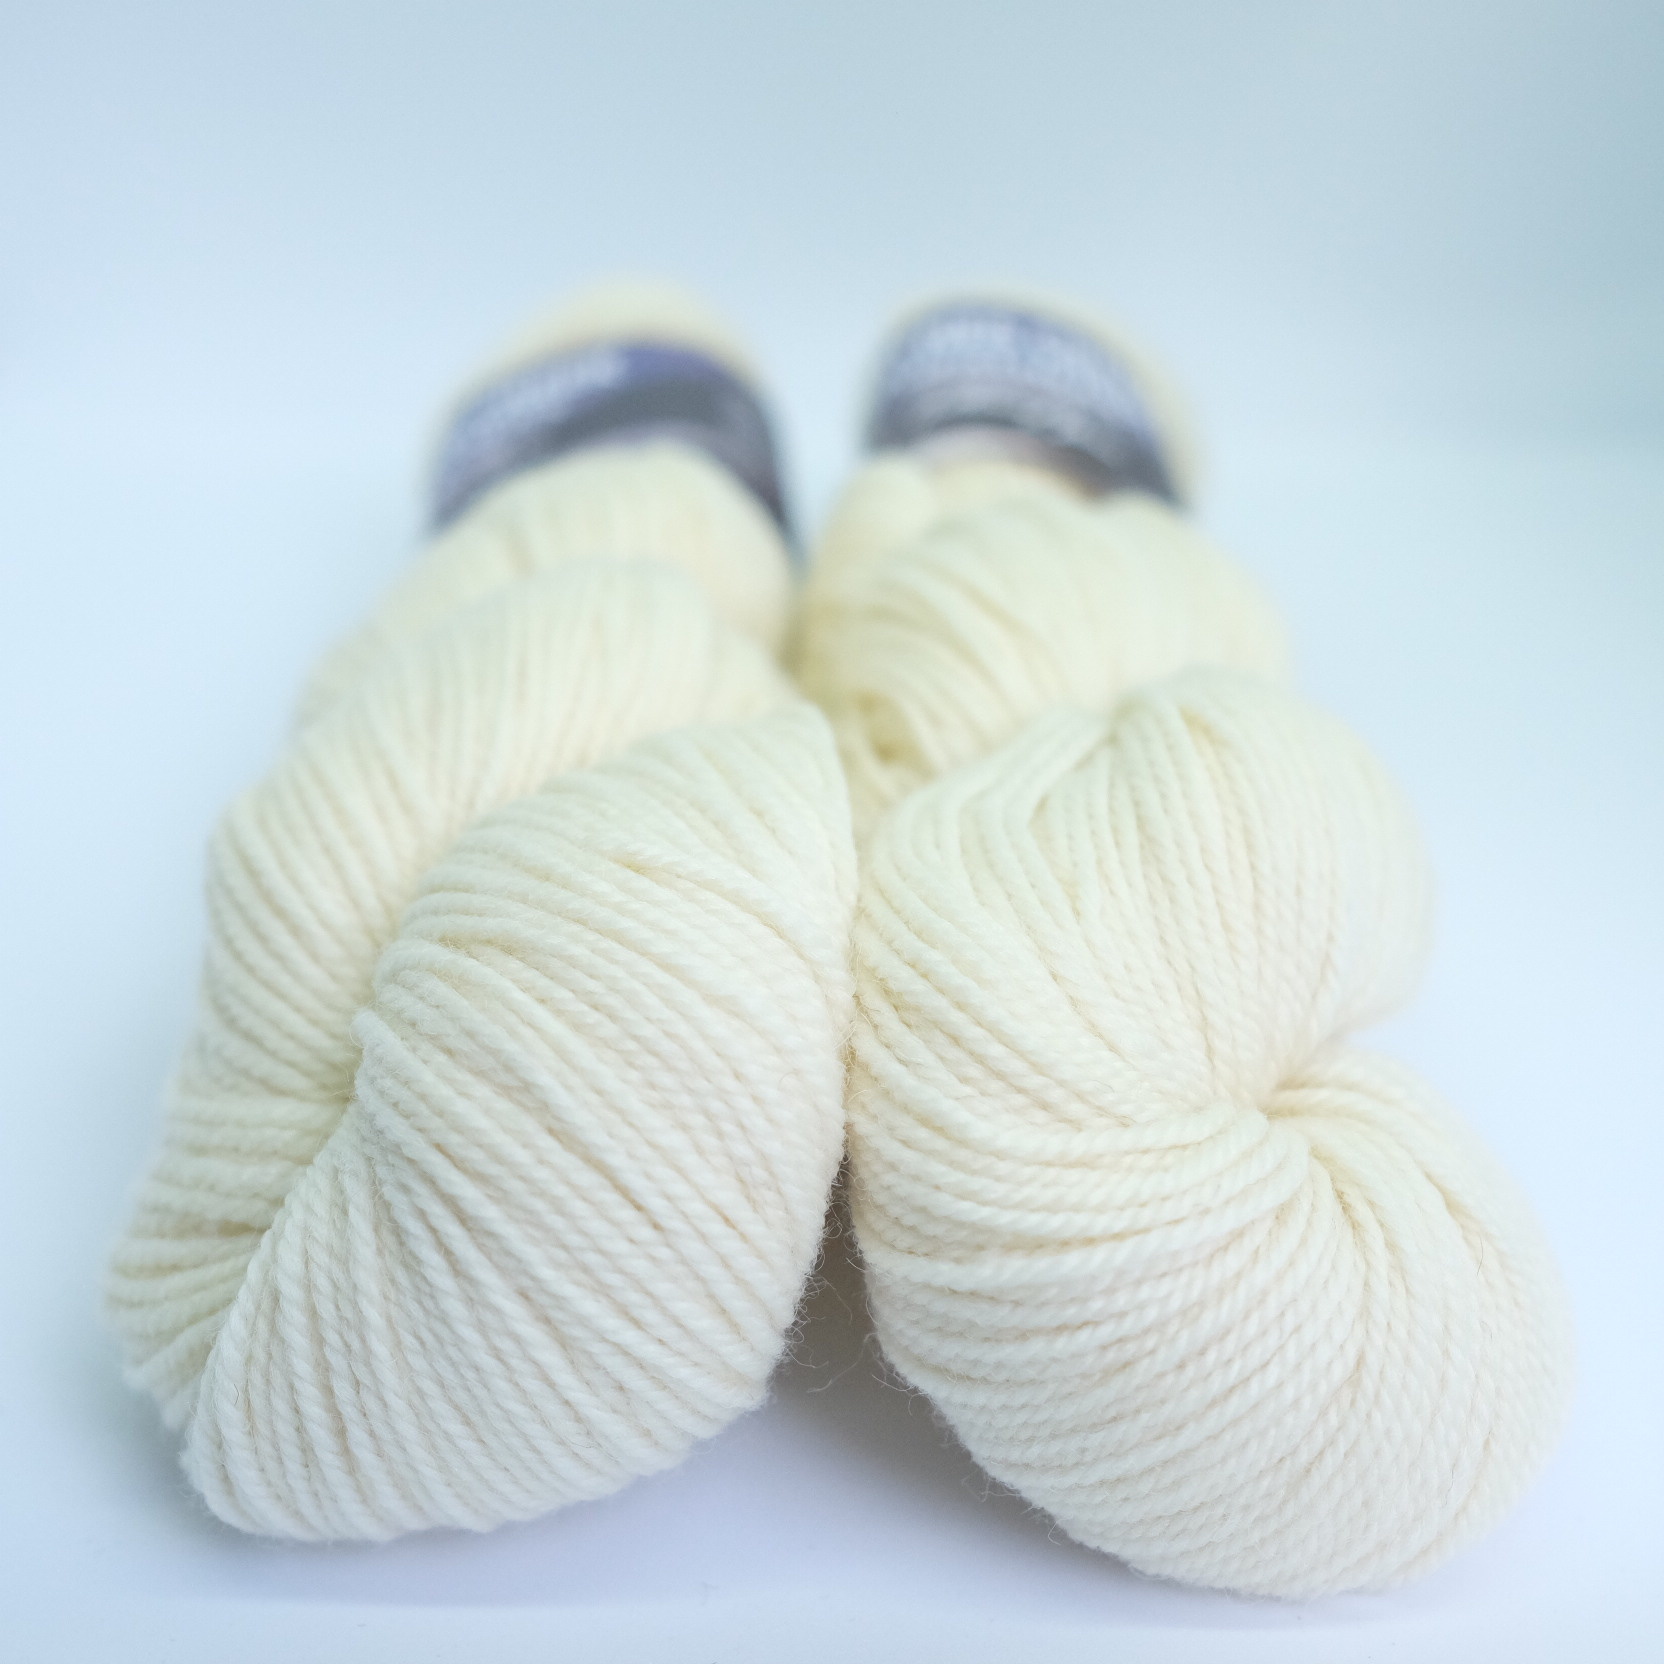 Undyed Yarn 100% Merino Soft Chunky Heavy Bulky Natural Ecru White